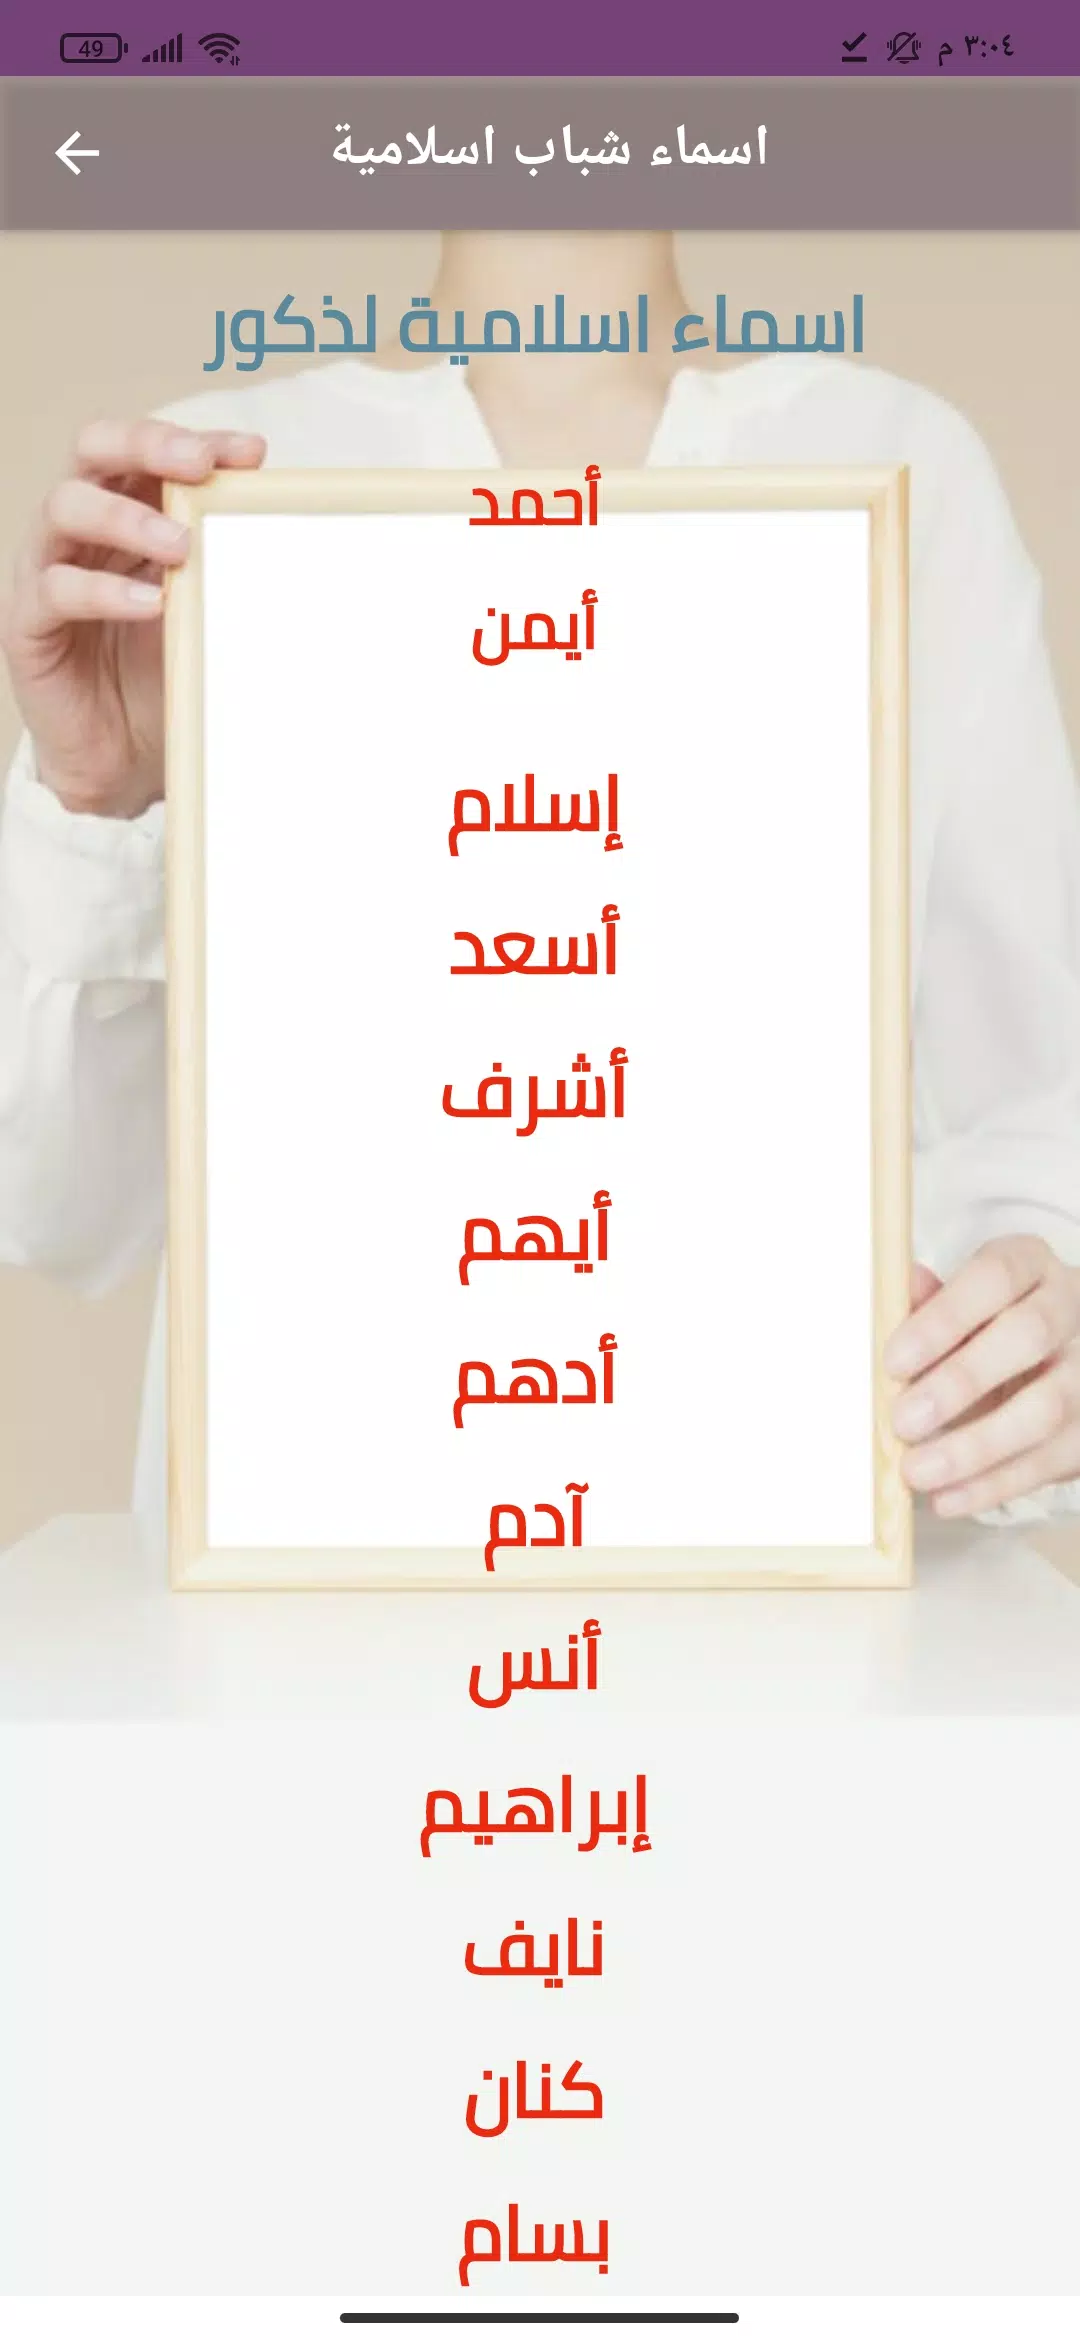 اسماء اولاد عربية جديدة APK for Android Download